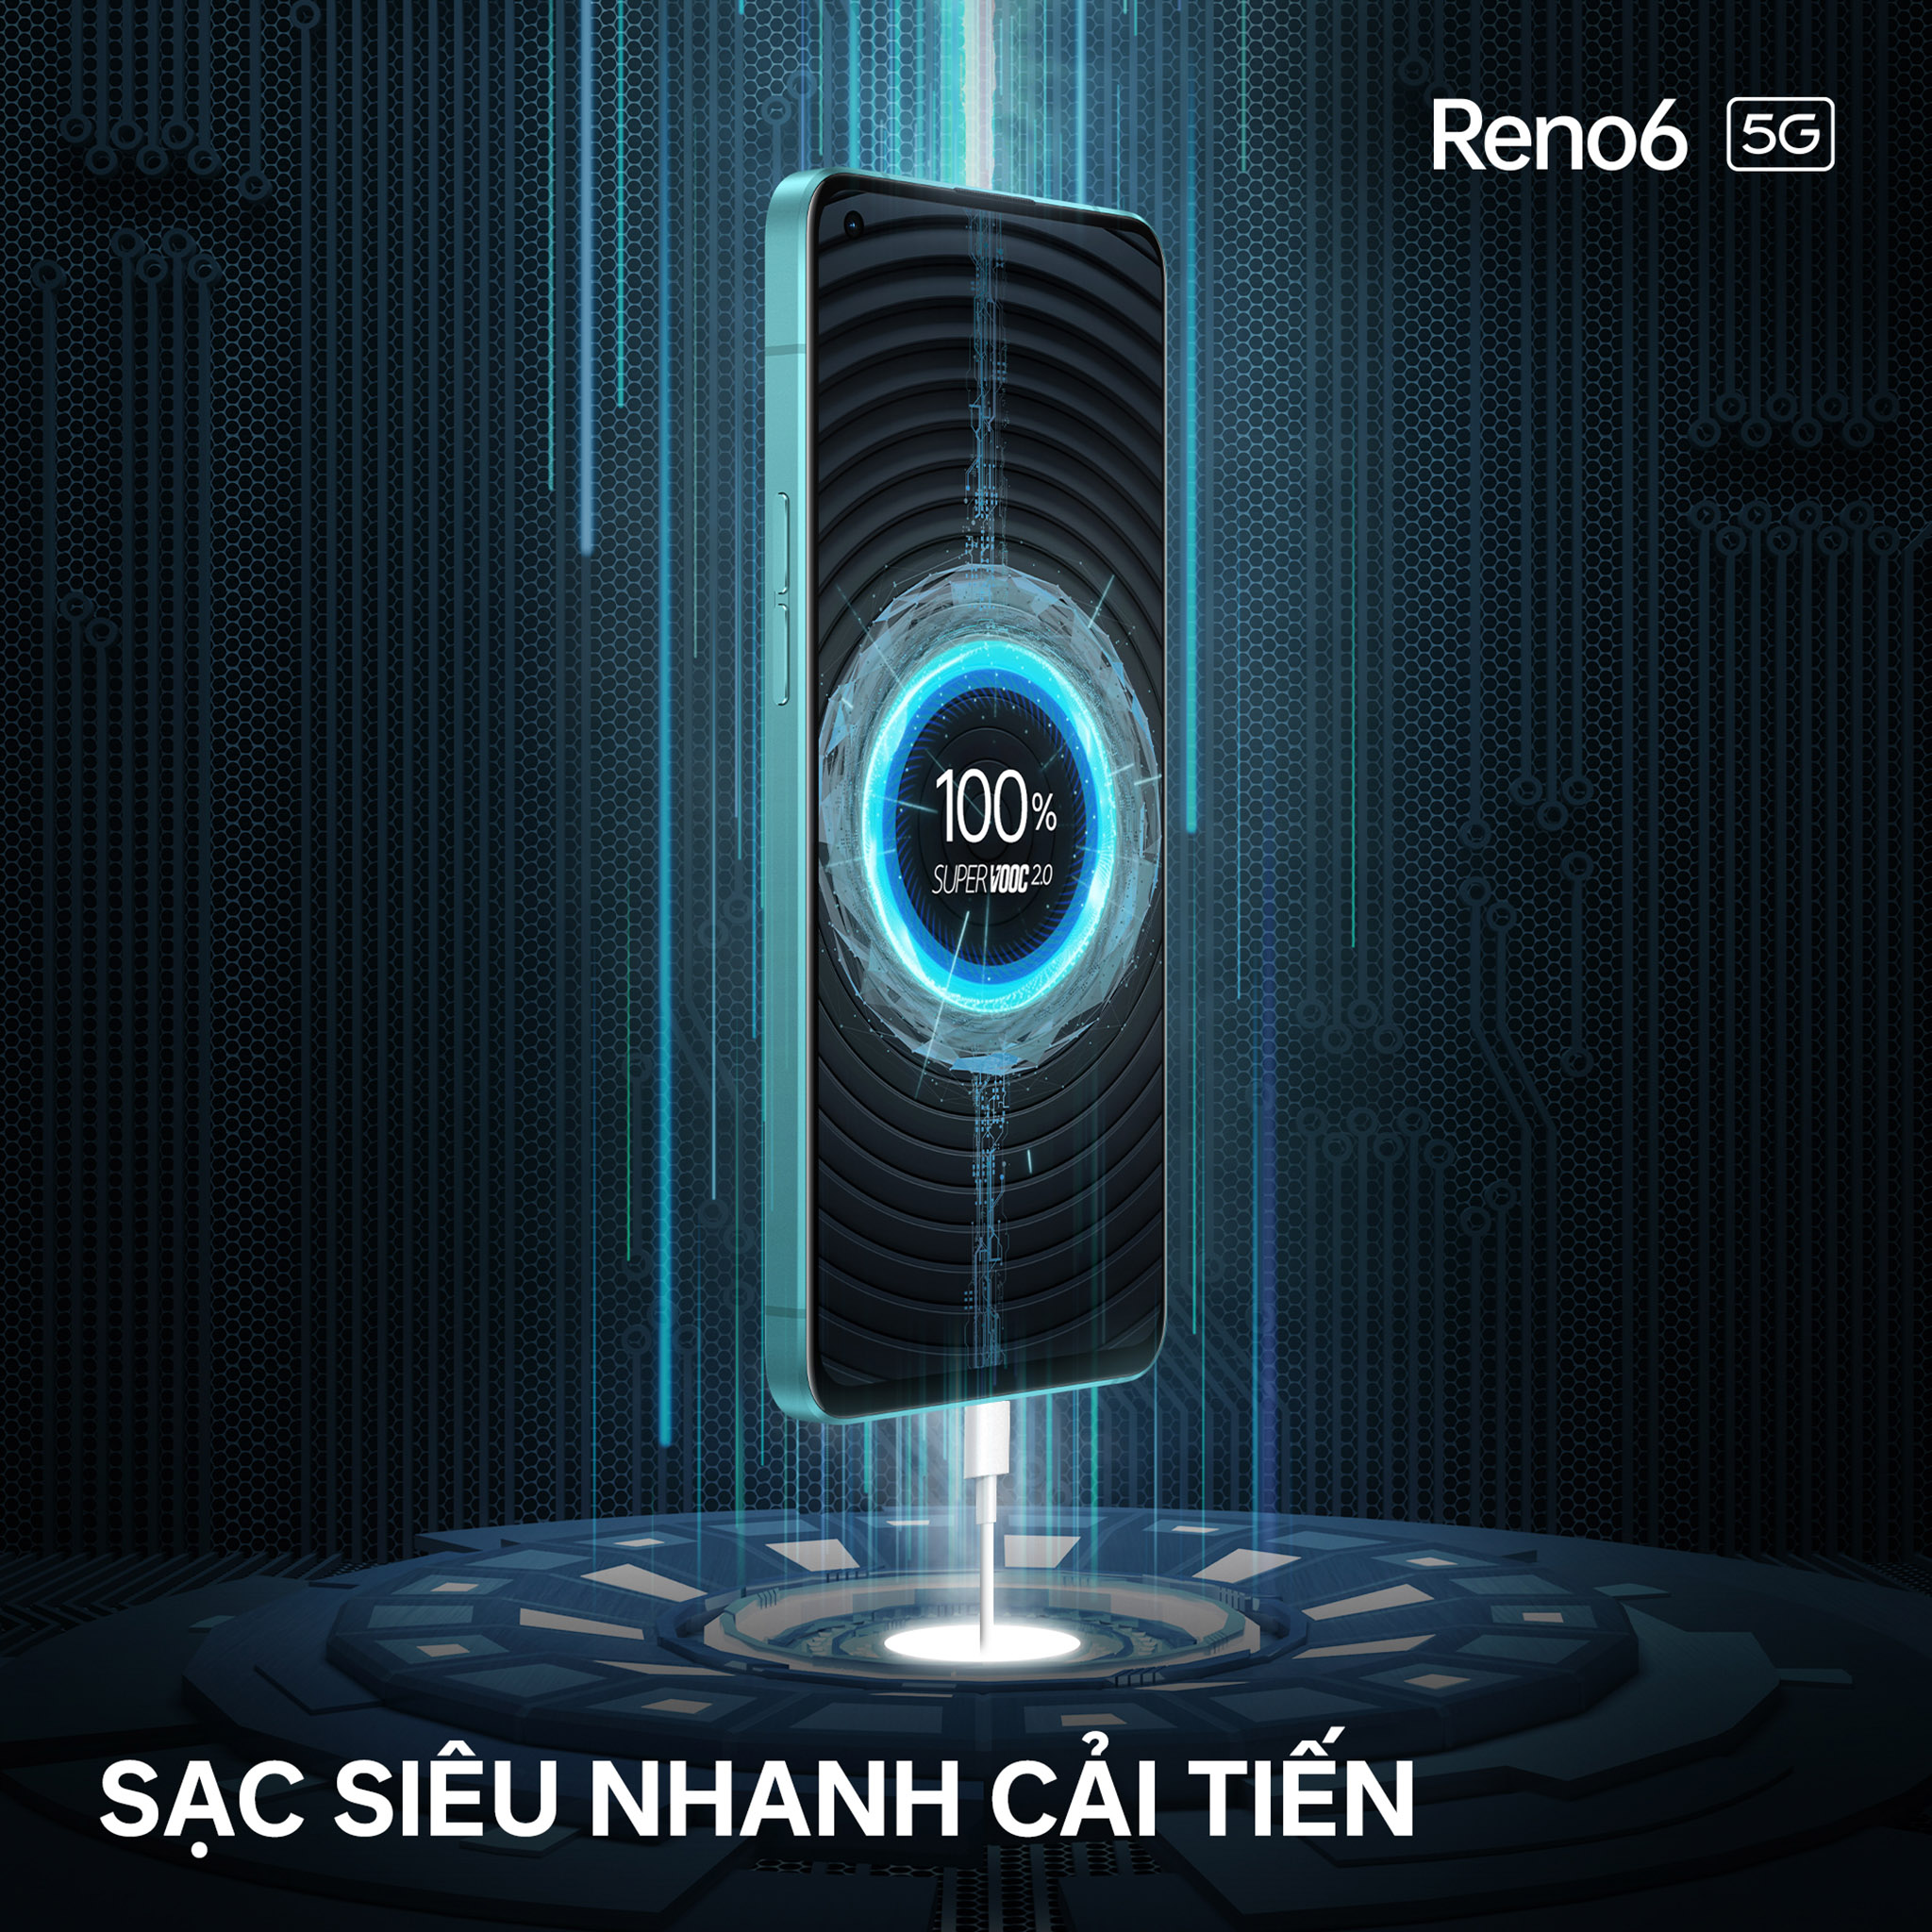 OPPO Reno6 5G chính thức ra mắt với thiết kế thời thượng và Video Chân dung Bokeh Flare ấn tượng